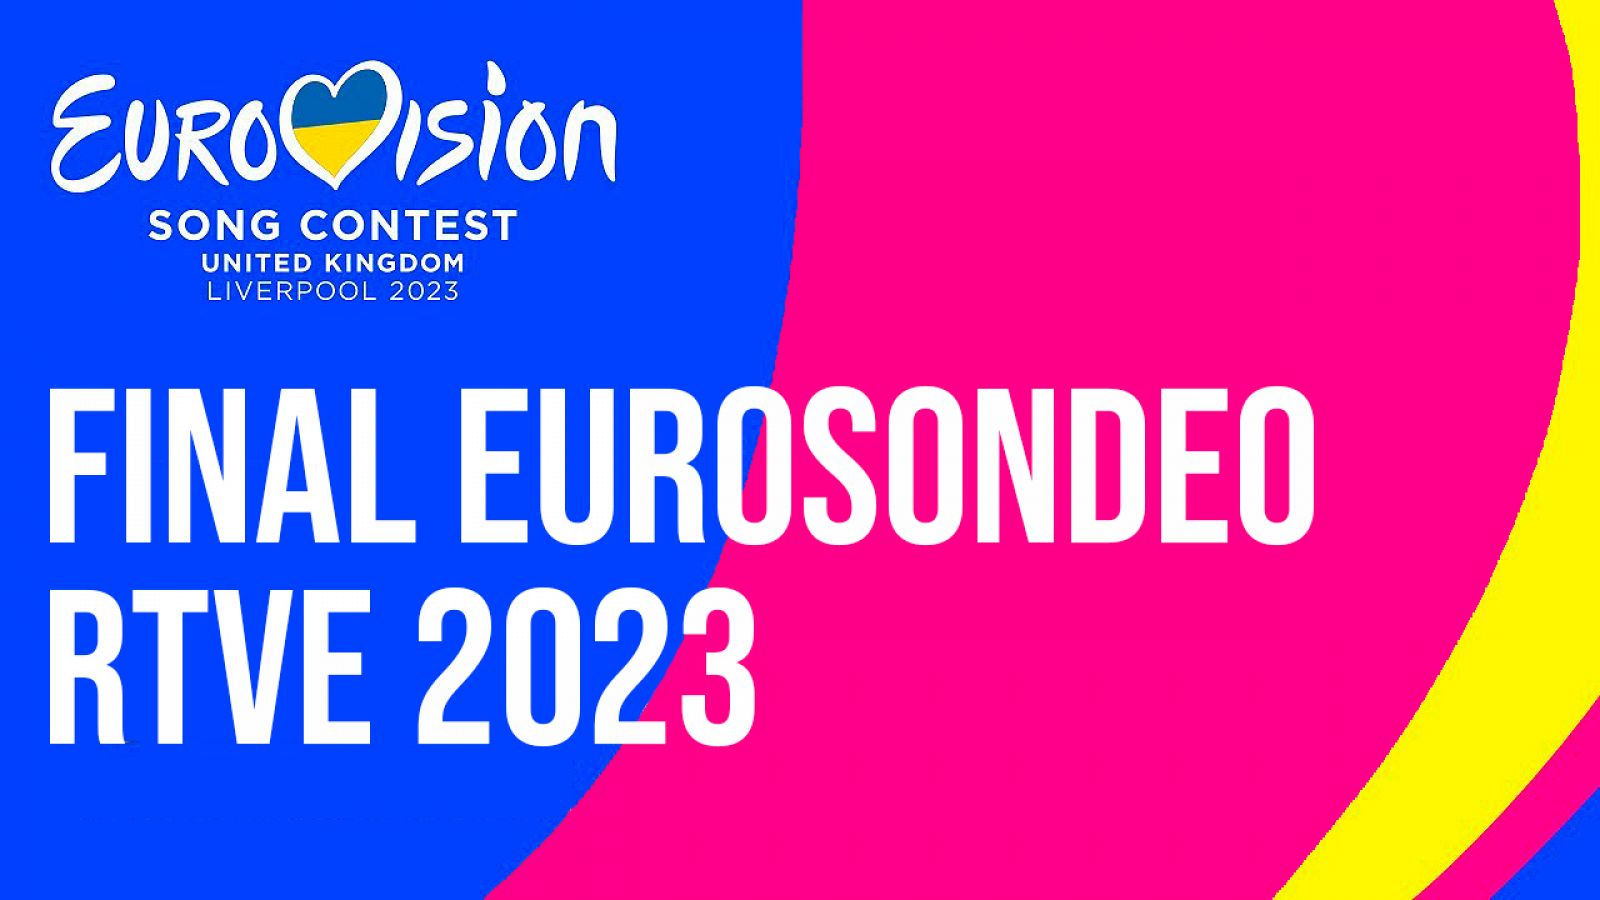 Eurovisión 2023 - Gran Final Eurosondeo RTVE 2023 (RECAP)